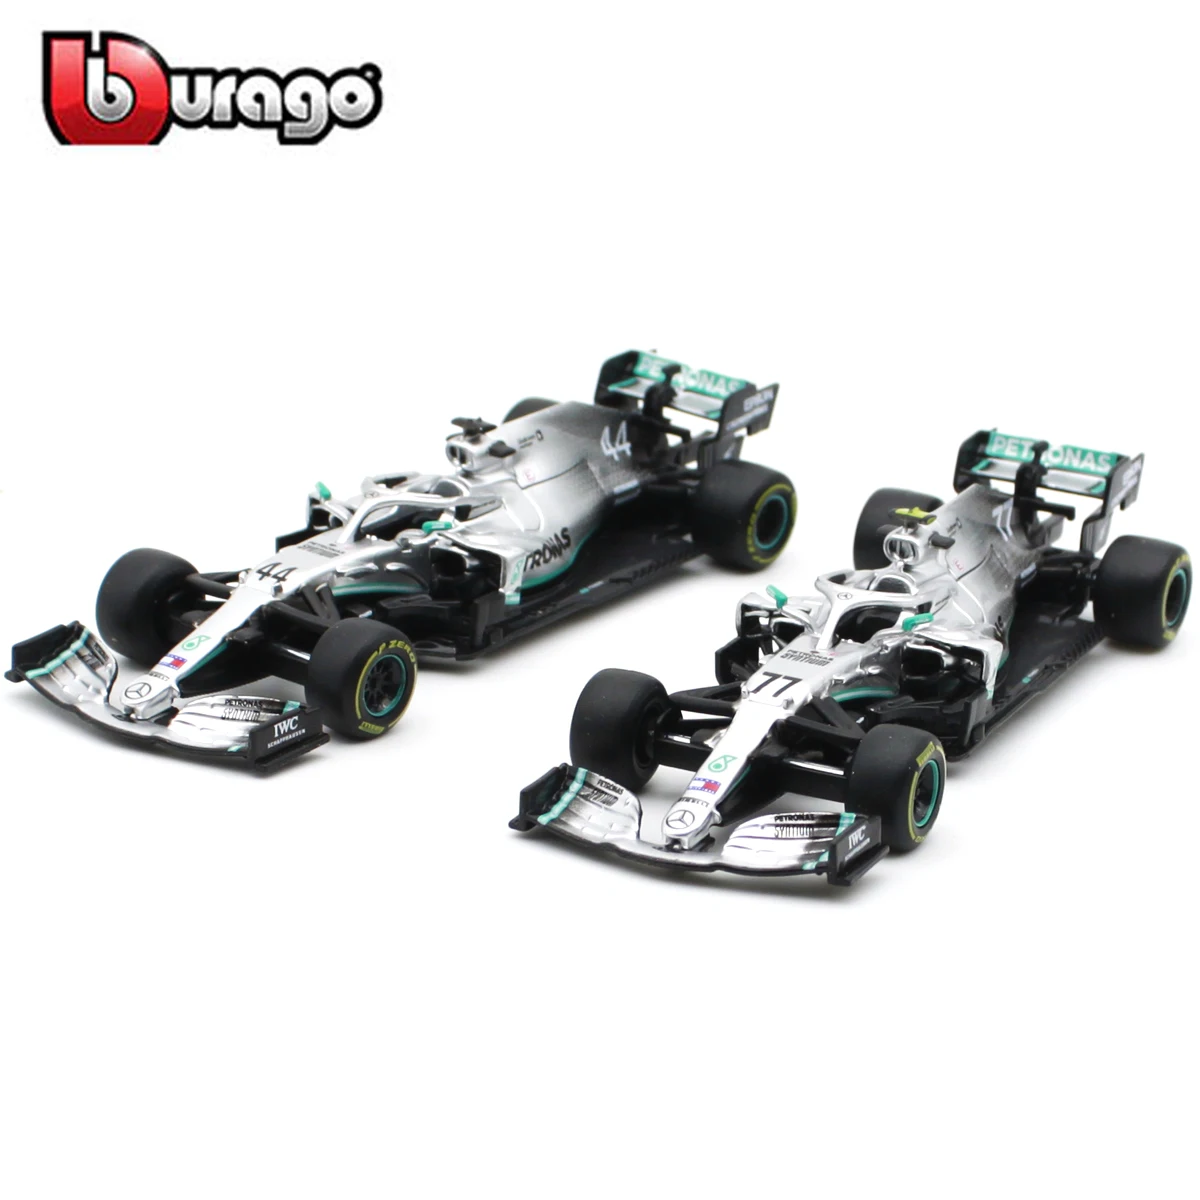 

Bburago 1:43 2019 W10 #77 #44 W07 #6 #44 F1 Racing Formula Car Static Simulation Diecast Alloy Model Car